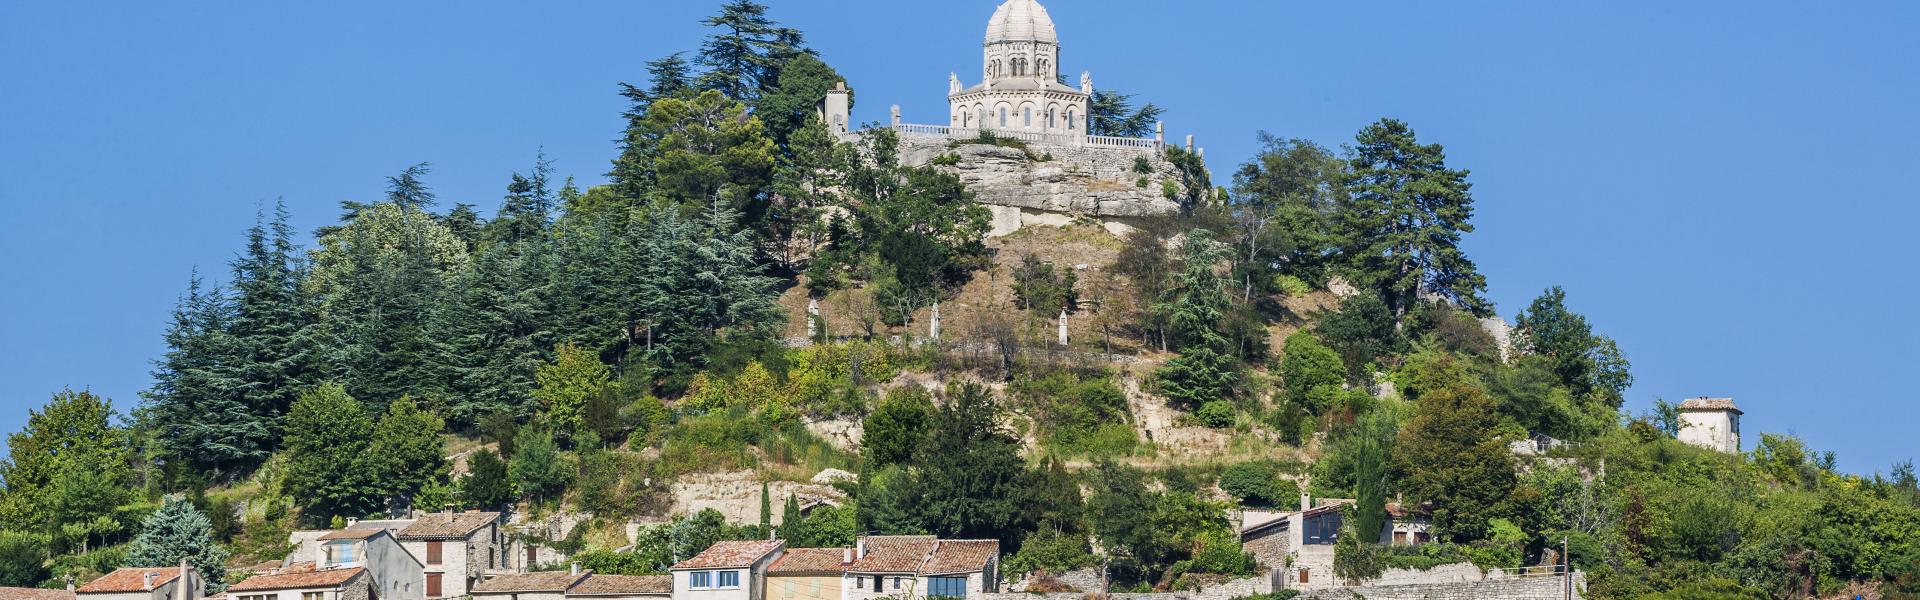 France, Alpes-de-Haute-Provence, Forcalquier, view of Concathédrale Notre-Dame-du-Bourguier de Forqualquir.